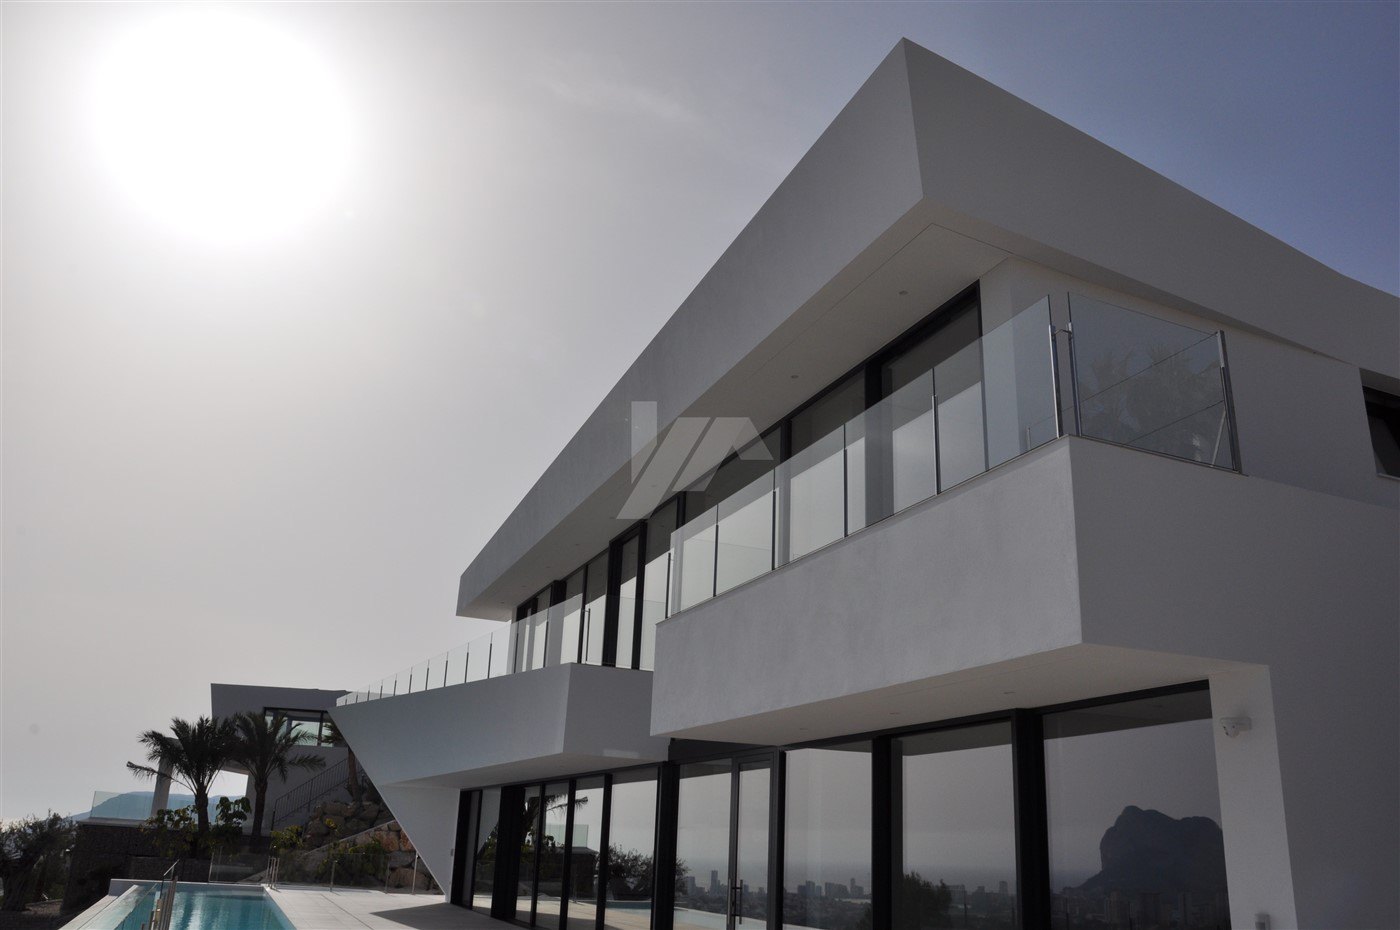 Luxury sea view villa for sale in Benissa, Costa Blanca.